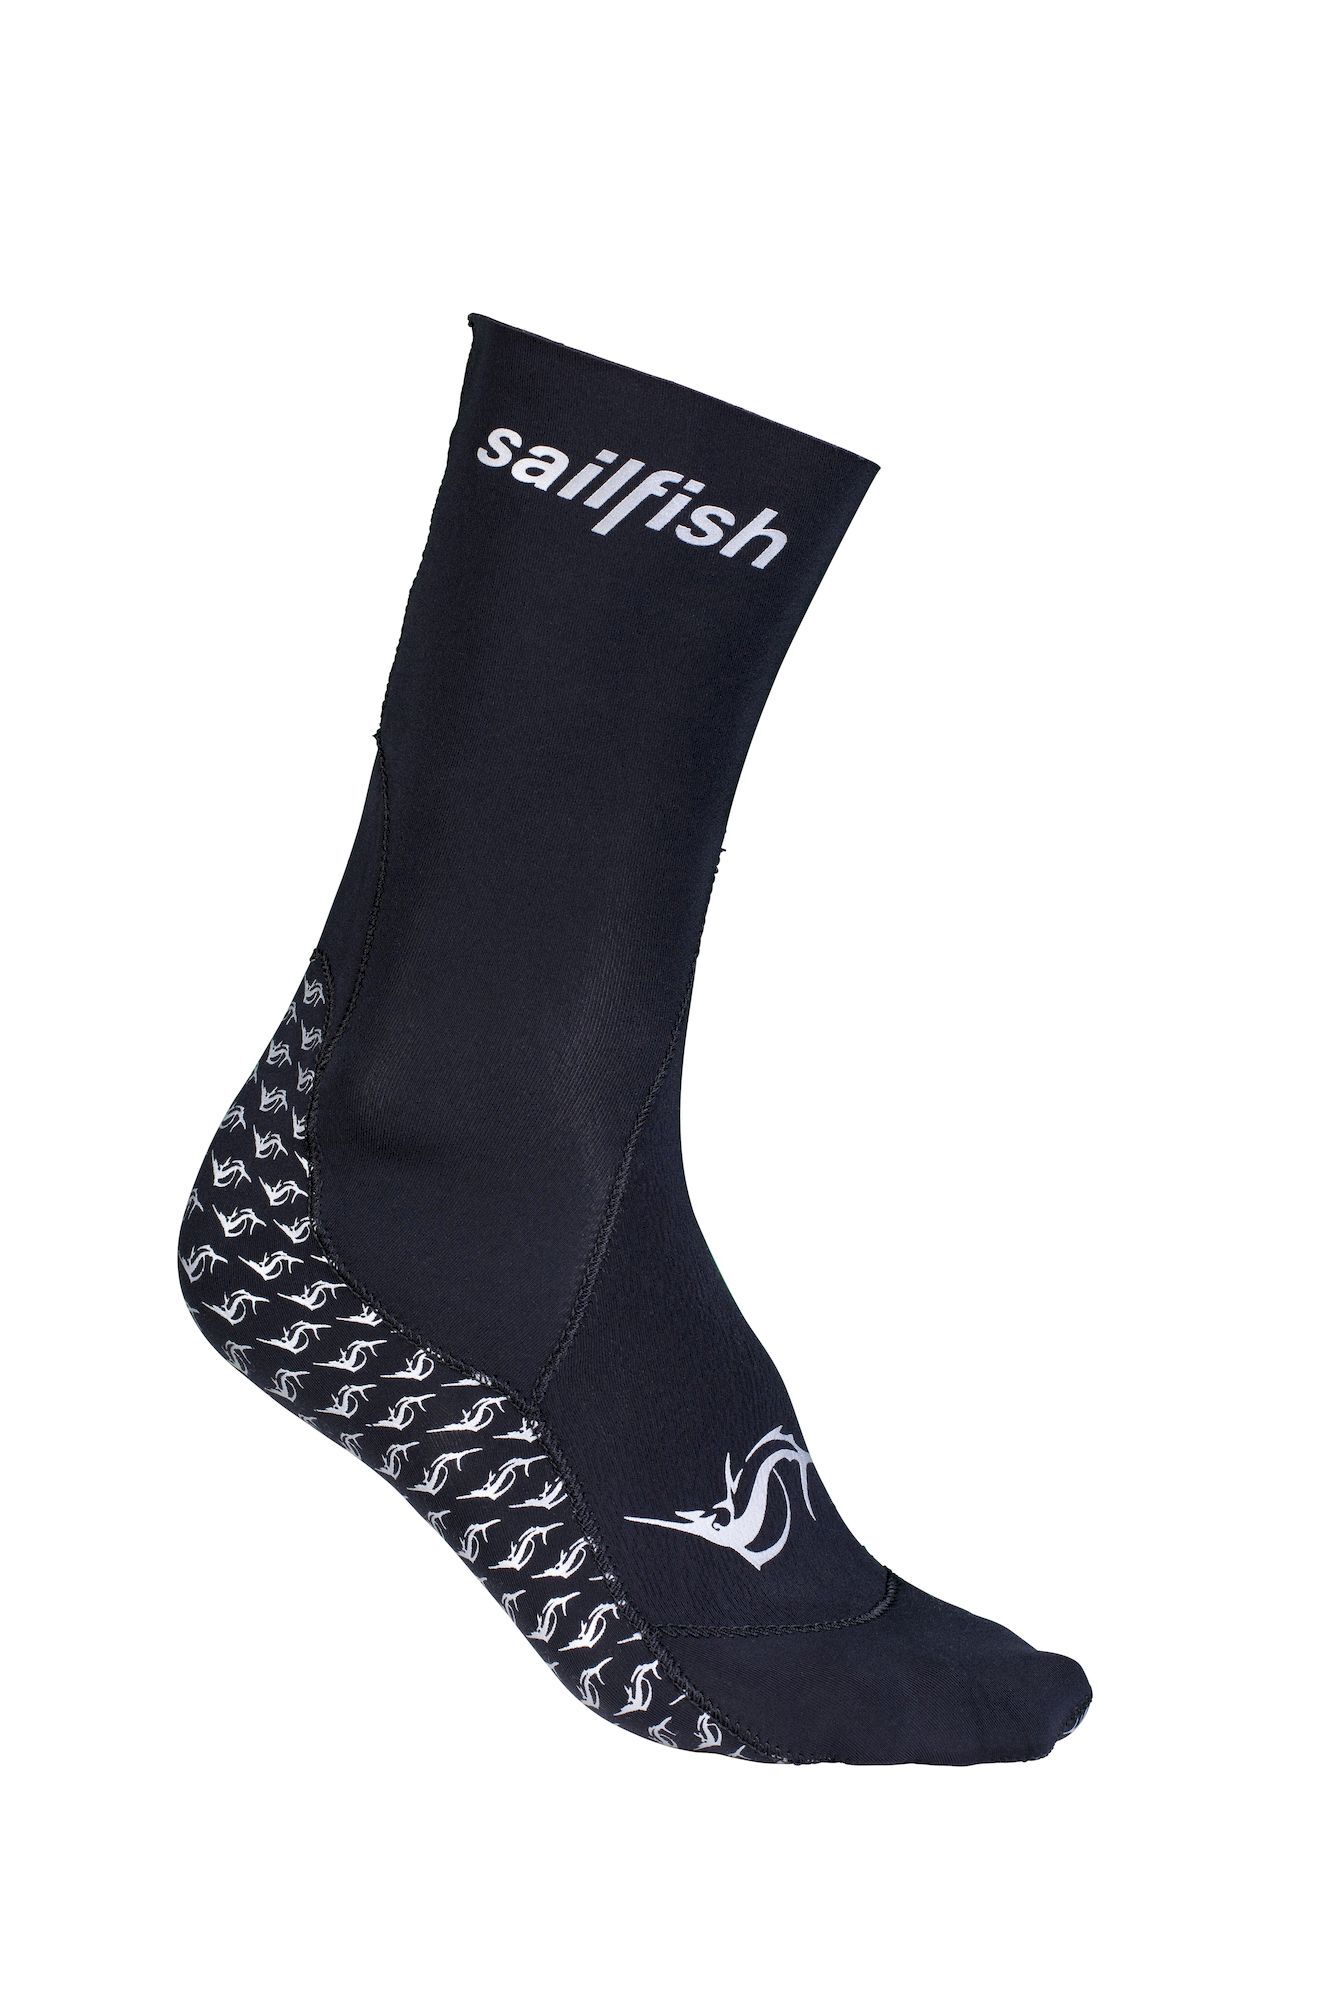 Sailfish Neoprene Socks - Neoprenové pono_ky | Hardloop